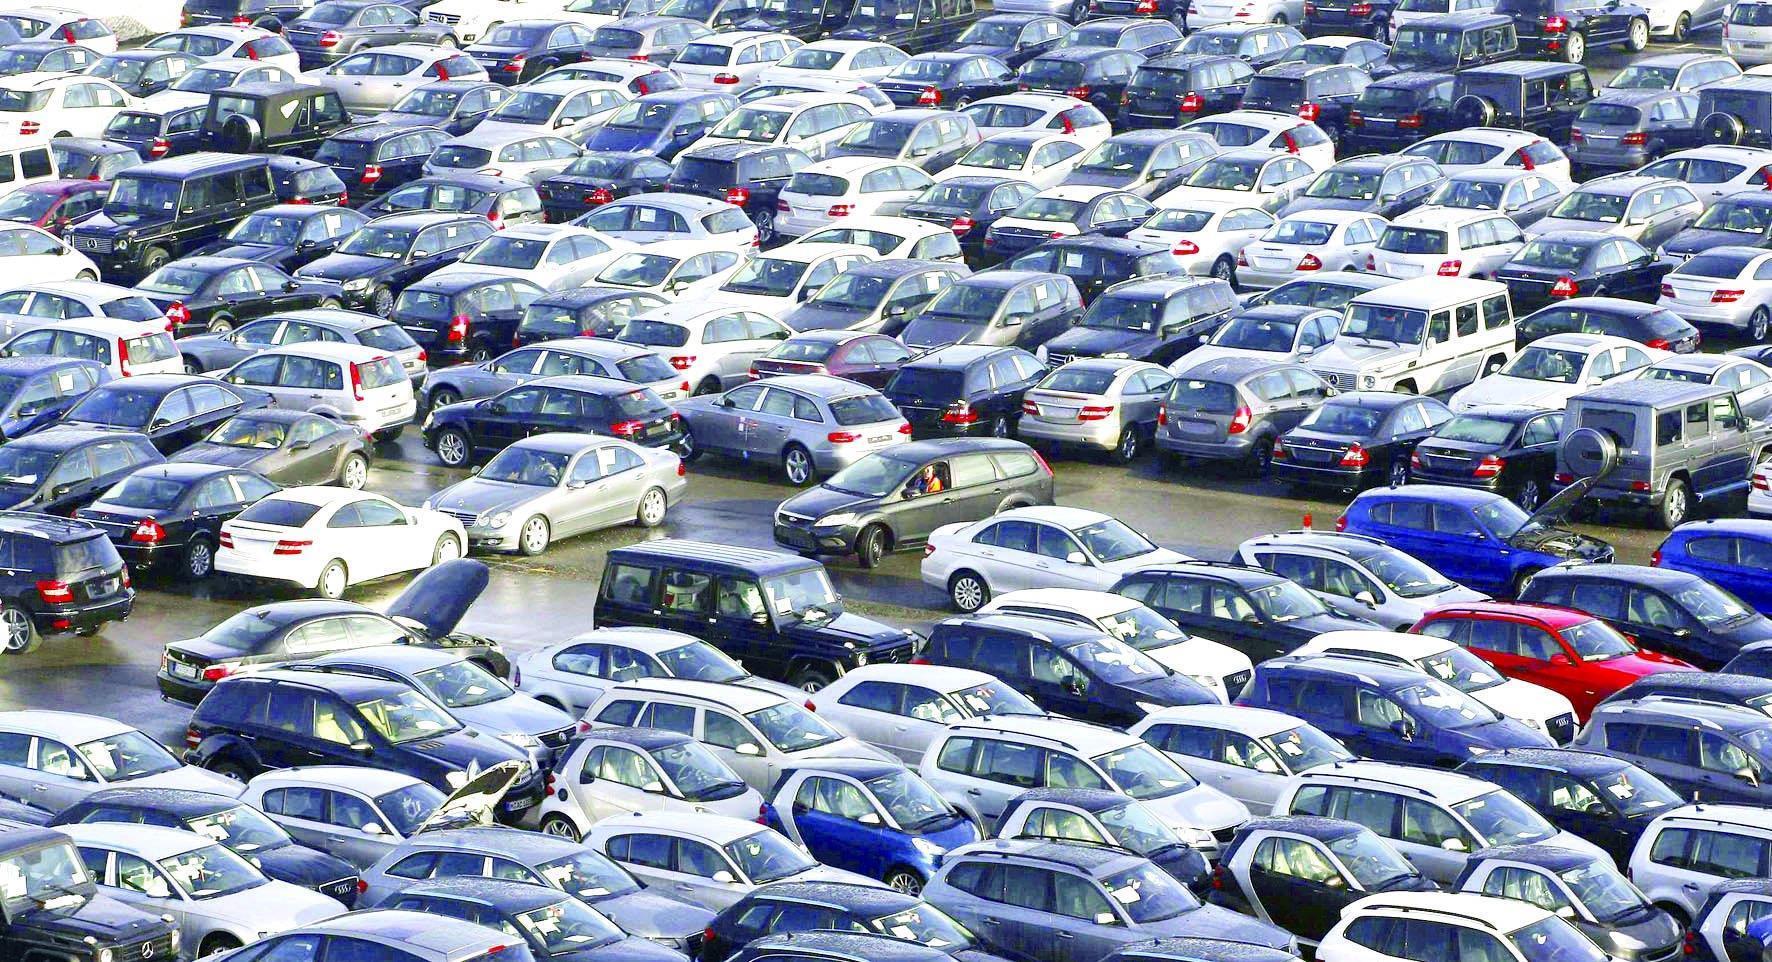 انخفاض عدد السيارات الواردة للمملكة بتسبة 68% في كانون الثاني 